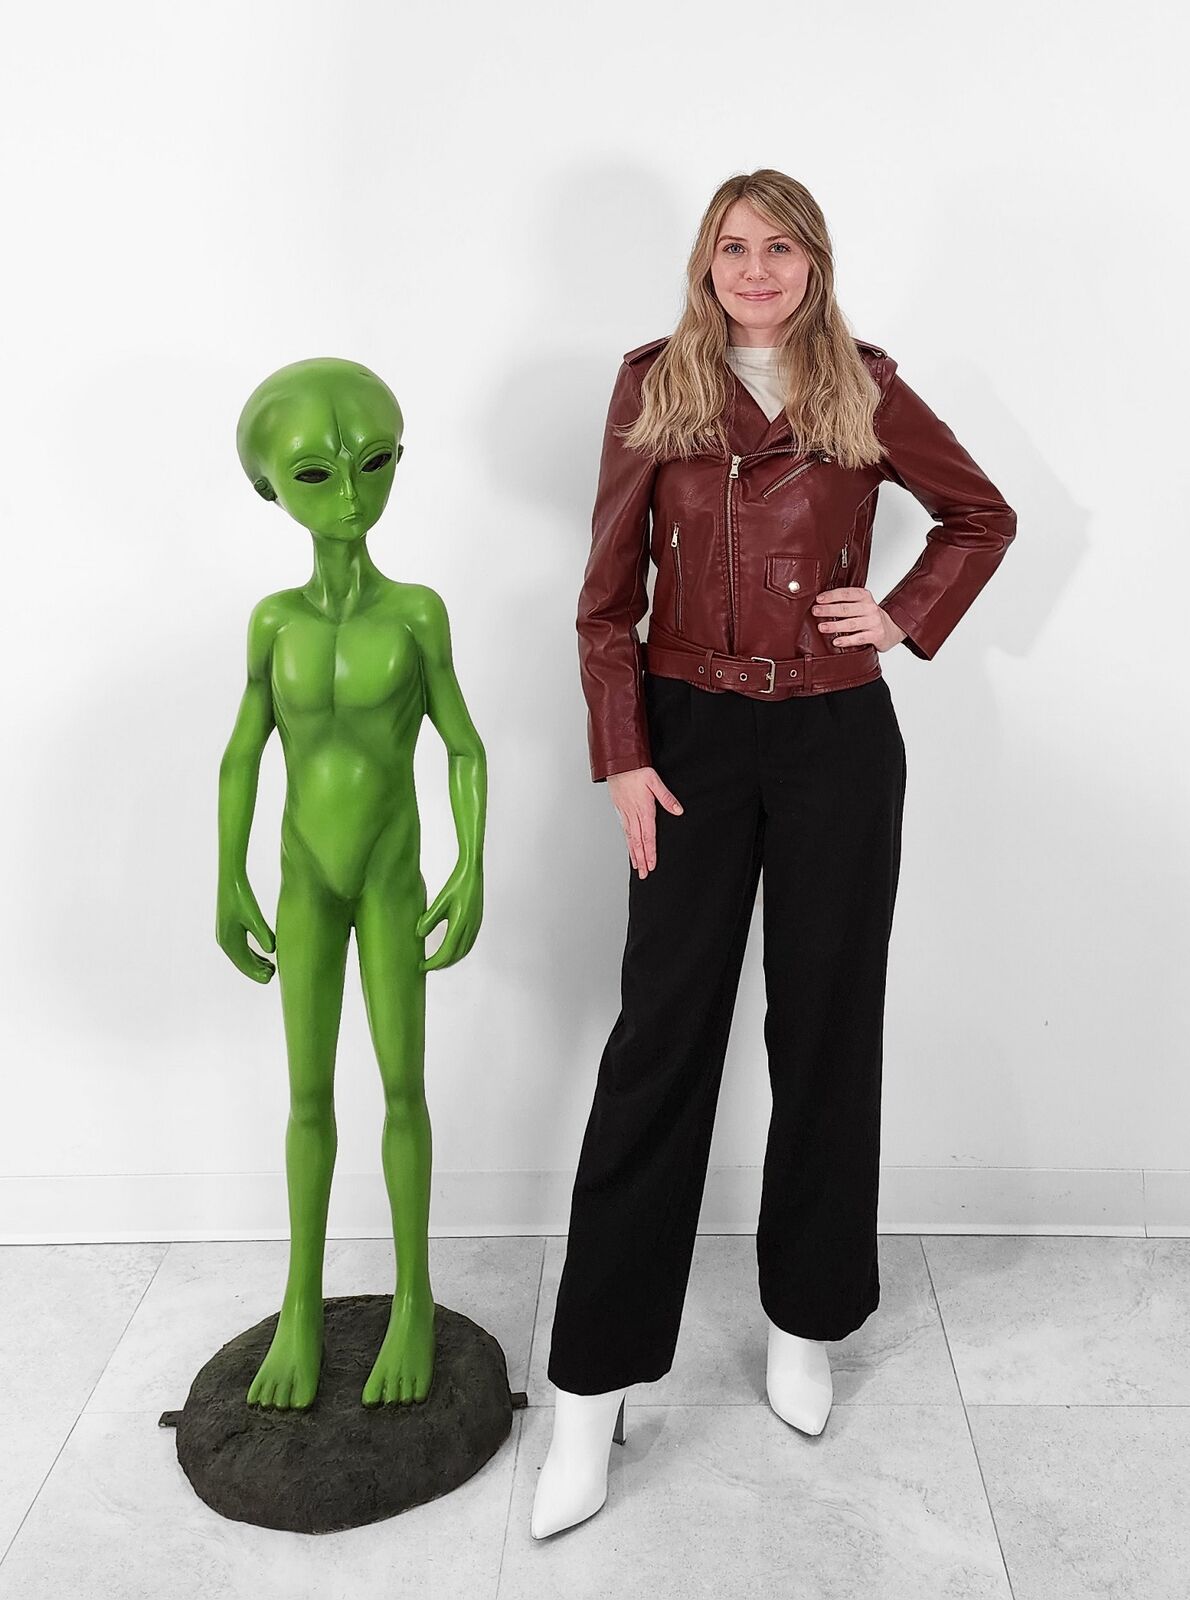 Large Alien Statue - Life Size Green Alien Statue 4.5FT - Indoor Outdoor